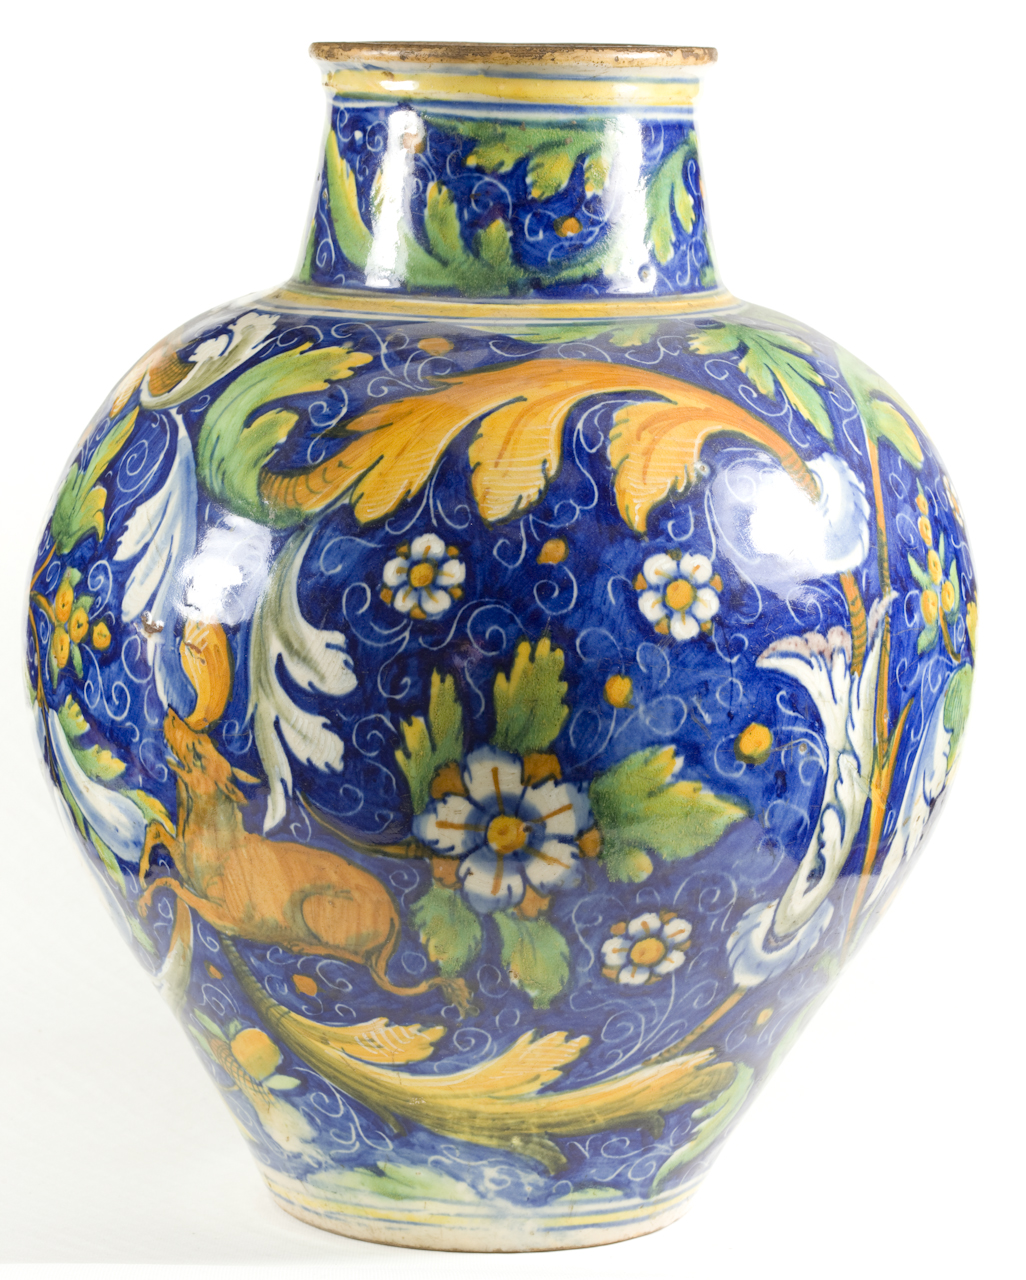 motivi decorativi a fiori e frutta (vaso a palla) - manifattura veneziana (seconda metà sec. XVI)